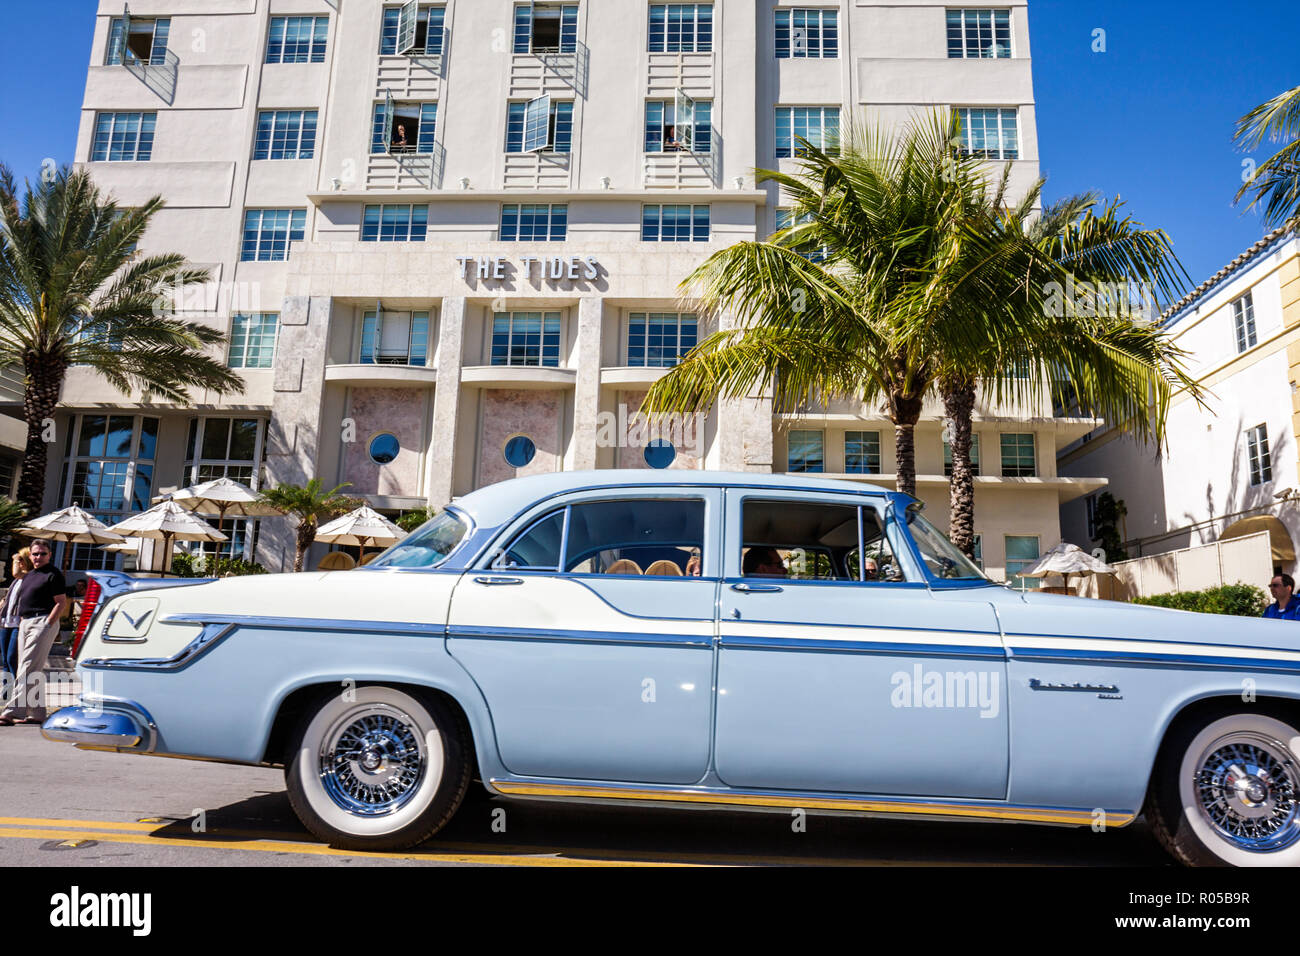 Miami Beach Florida, Ocean Drive, Art Deco Weekend, sfilata di festival dell'architettura, folla, auto classica, vintage, intrattenimento, palme, The Tides, hotel, L. Mur Foto Stock